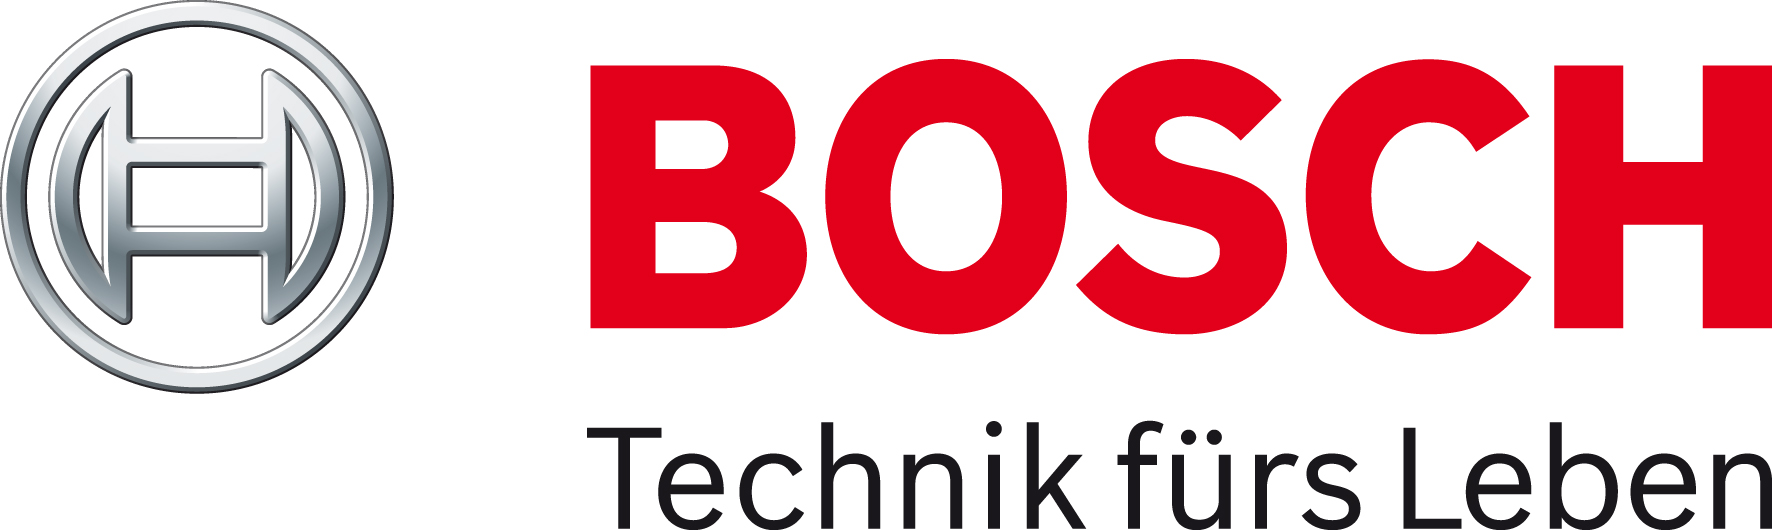 Bosch GmbH